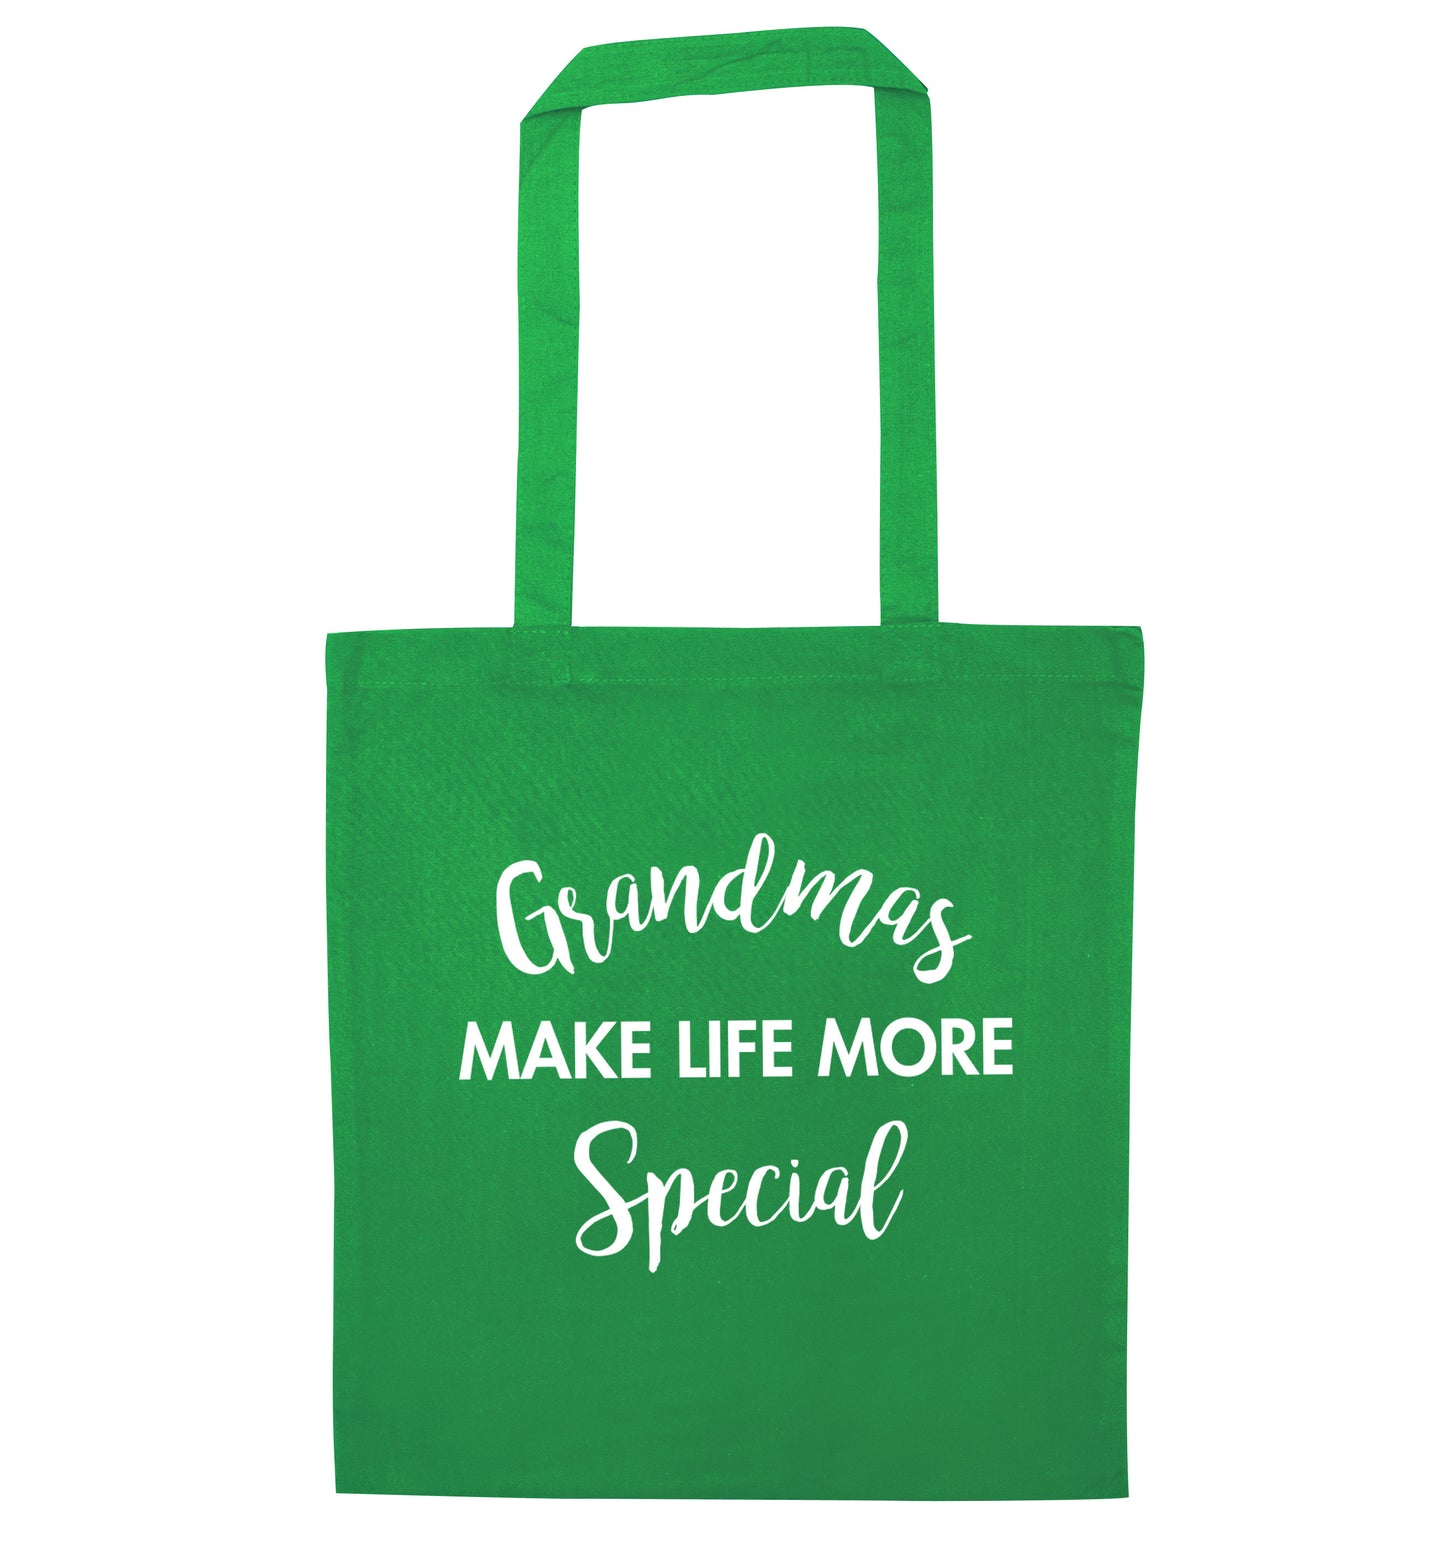 Grandmas make life more special green tote bag